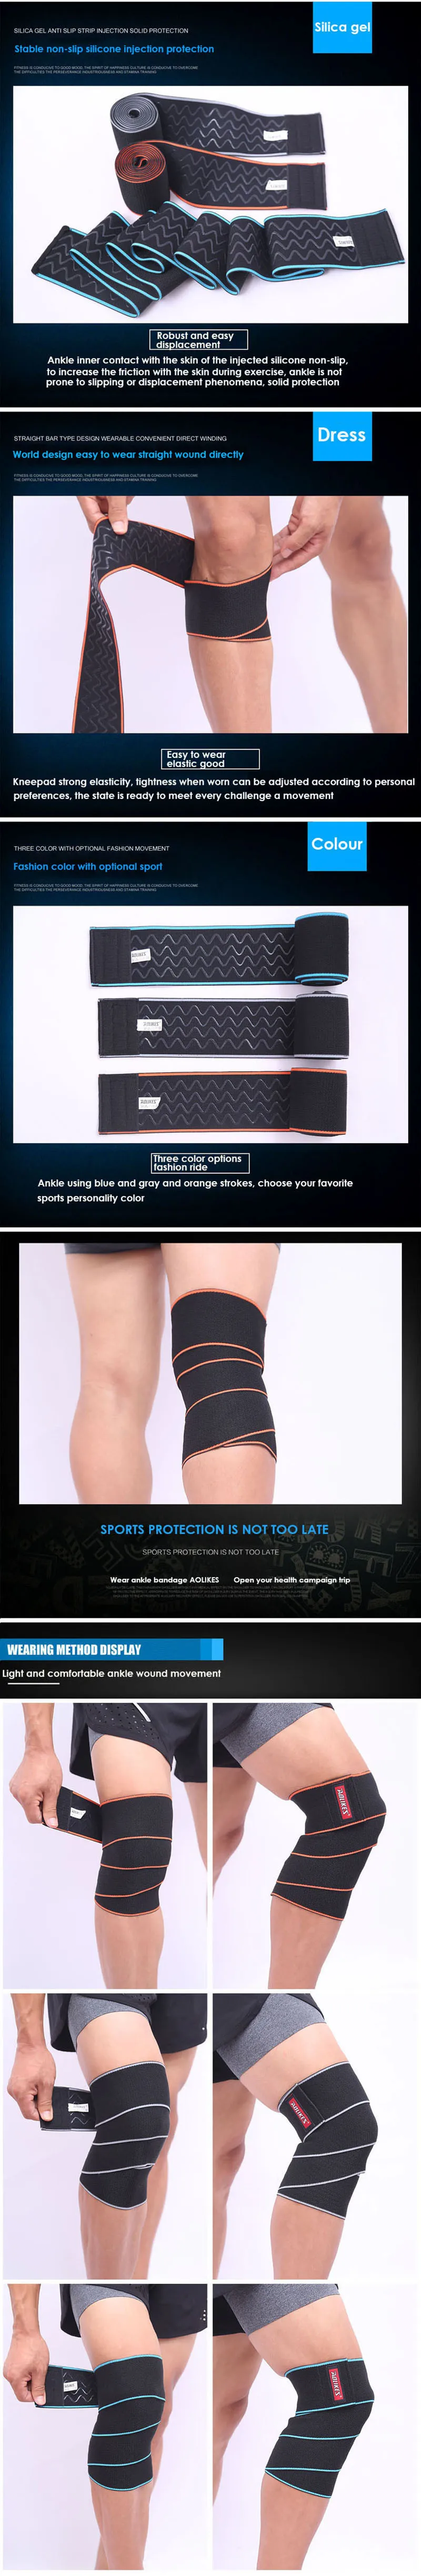 1 шт 1,5 м* 8 см Тяжелая атлетика бандаж для поддержки колена подтяжки пауэрлифтинг эластичный бинт для ног компрессионные ремень на голень, на колени колодки безопасности